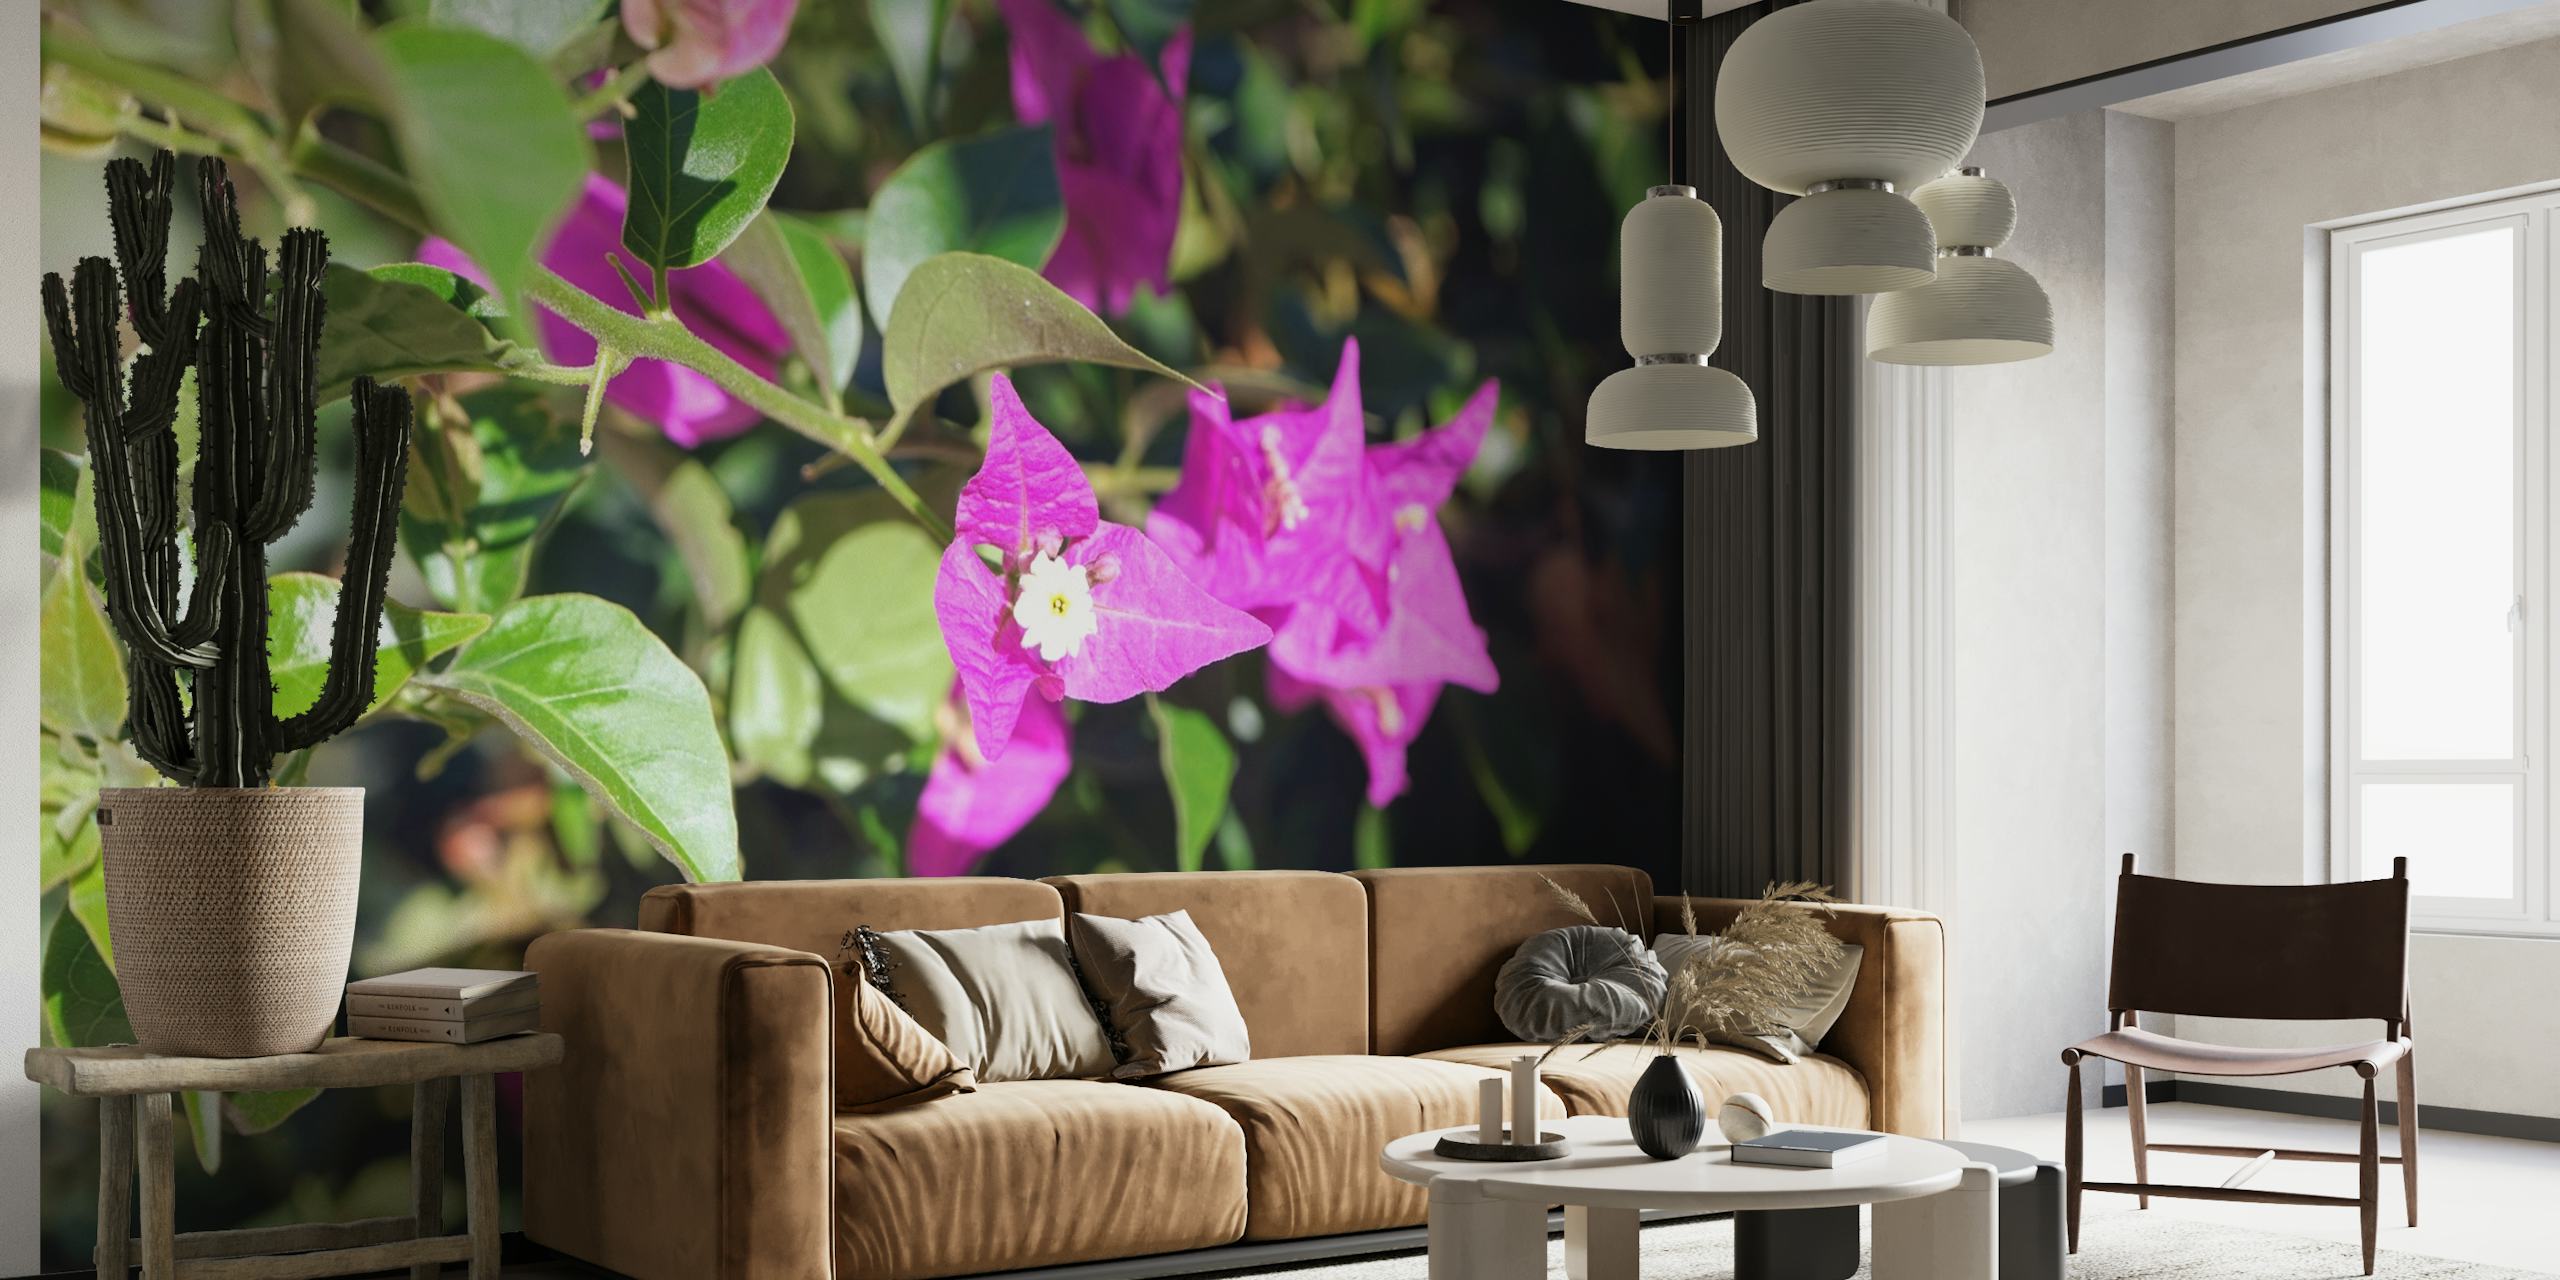 Wandbild mit Bougainvillea-Blüten in leuchtendem Rosa und Magenta vor üppigen grünen Blättern.